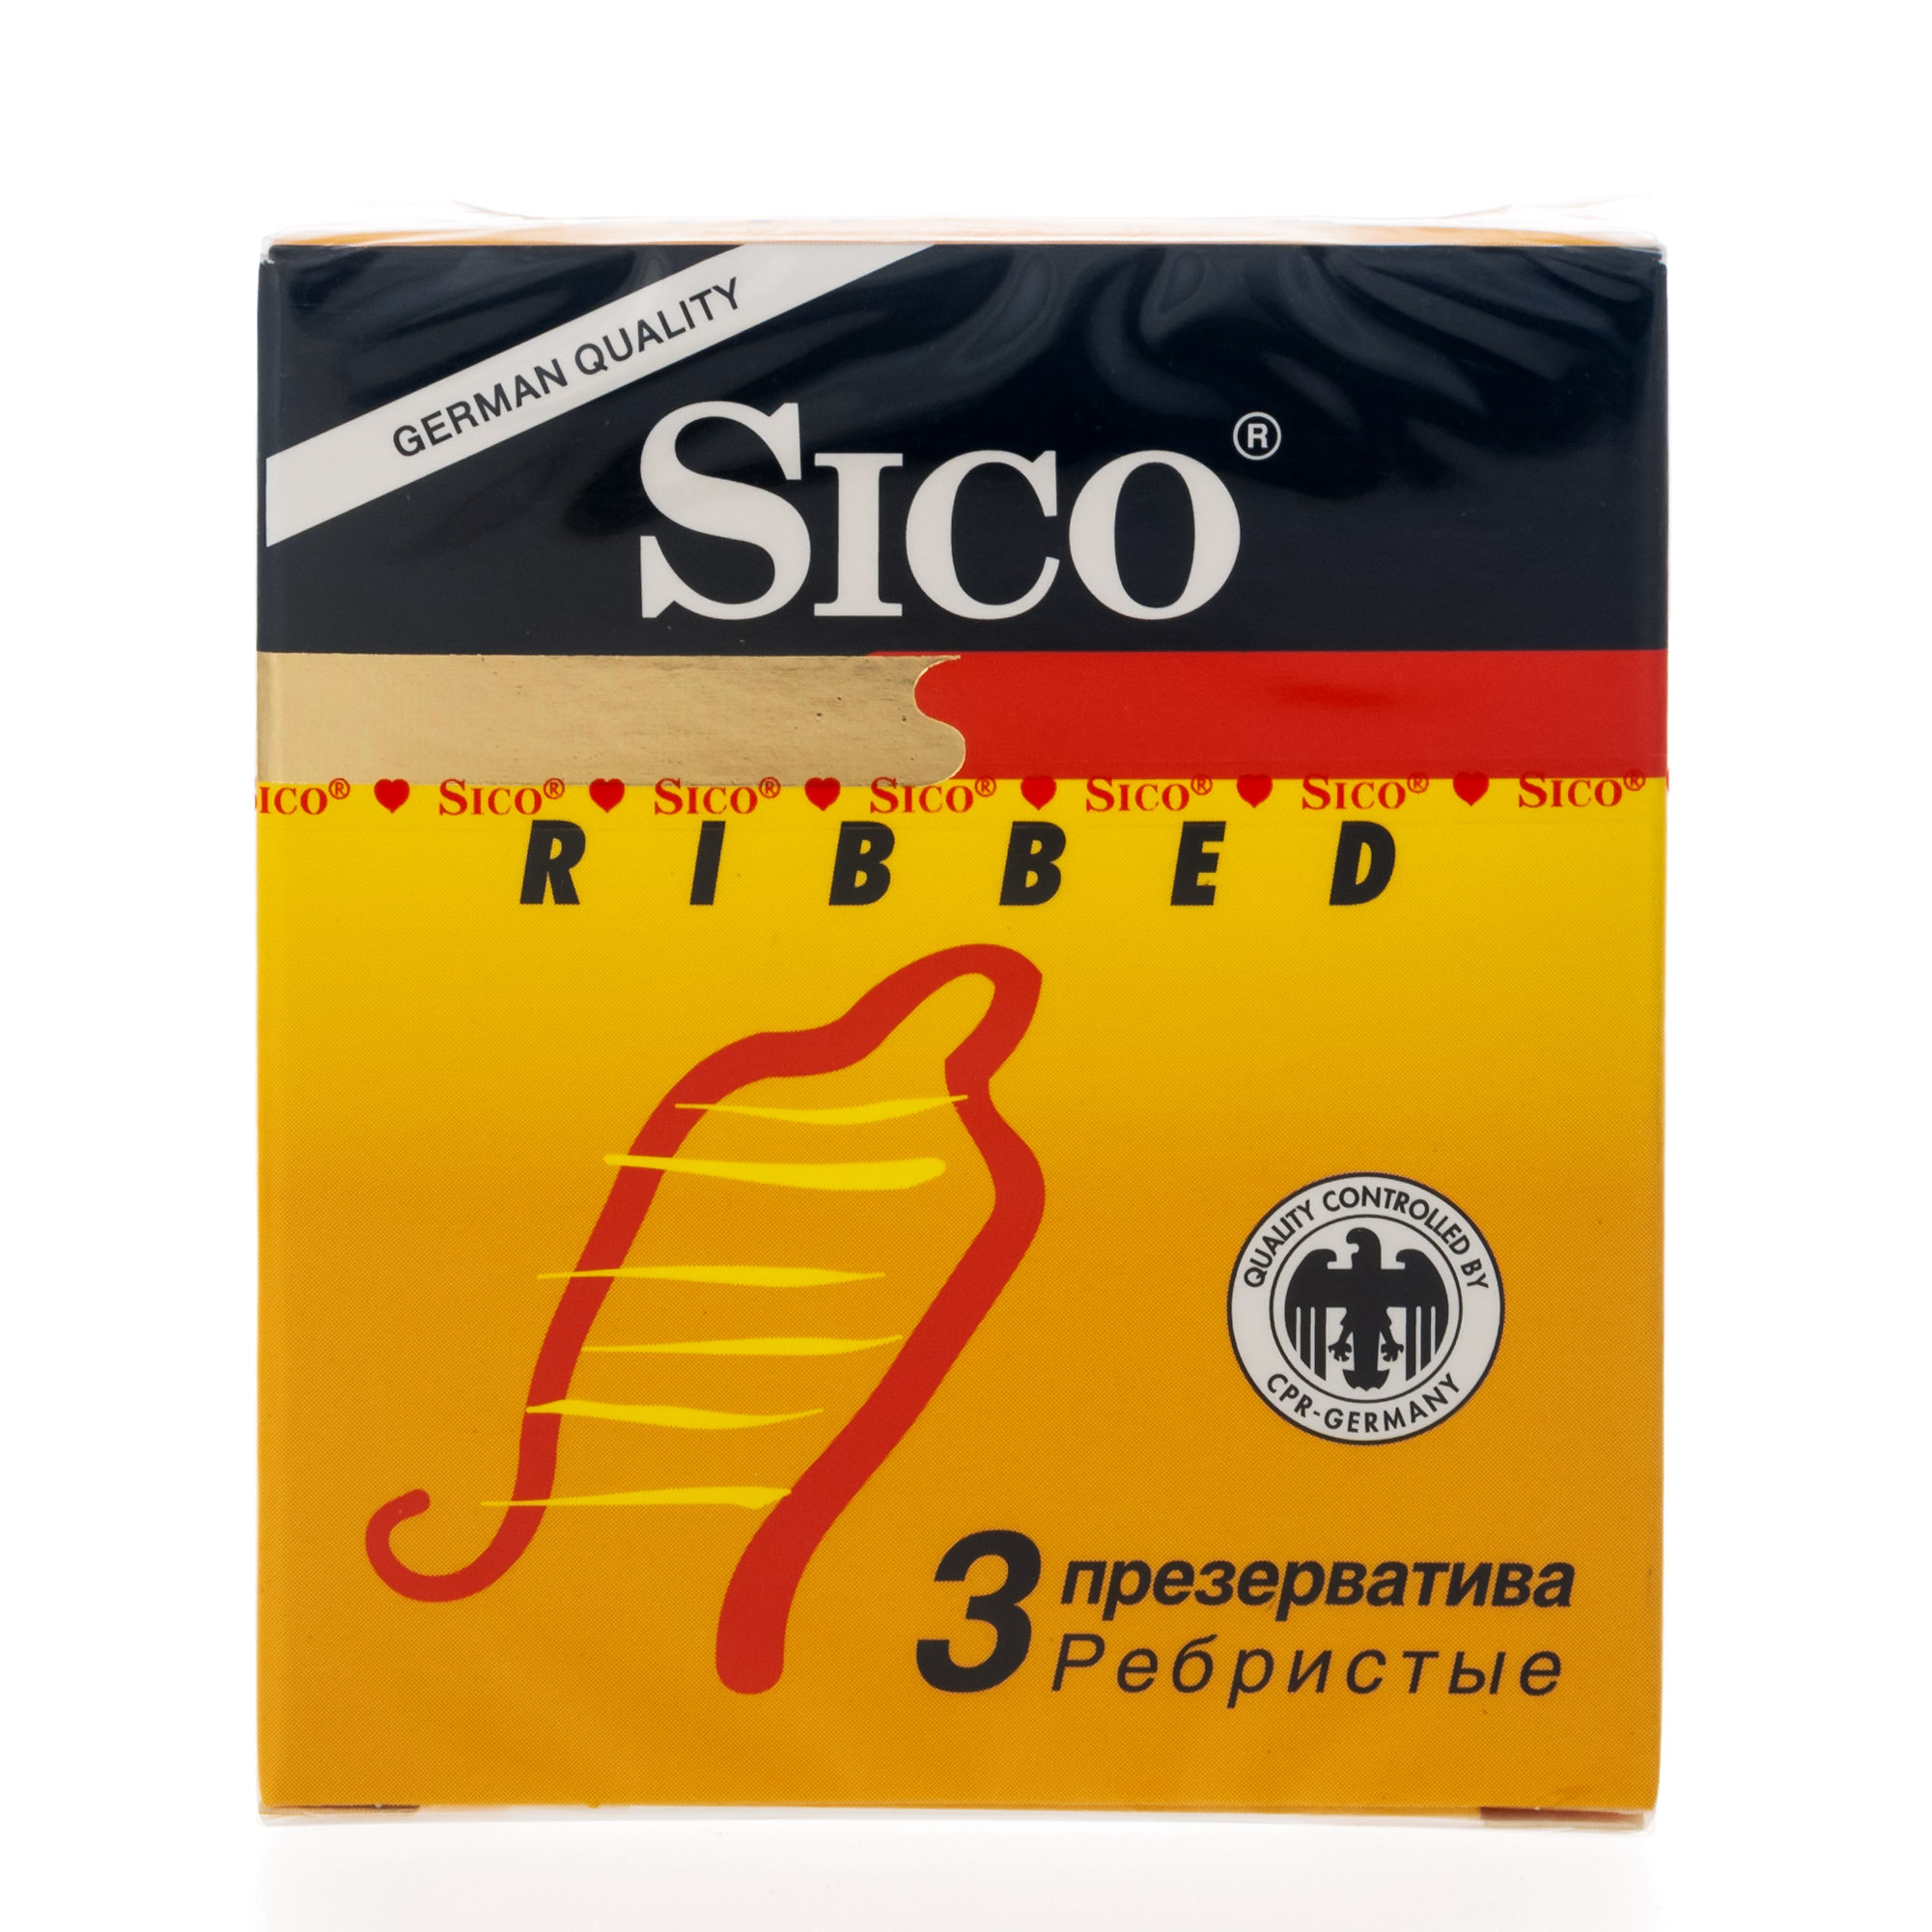 Сико презервативы Риббед ребристые №3